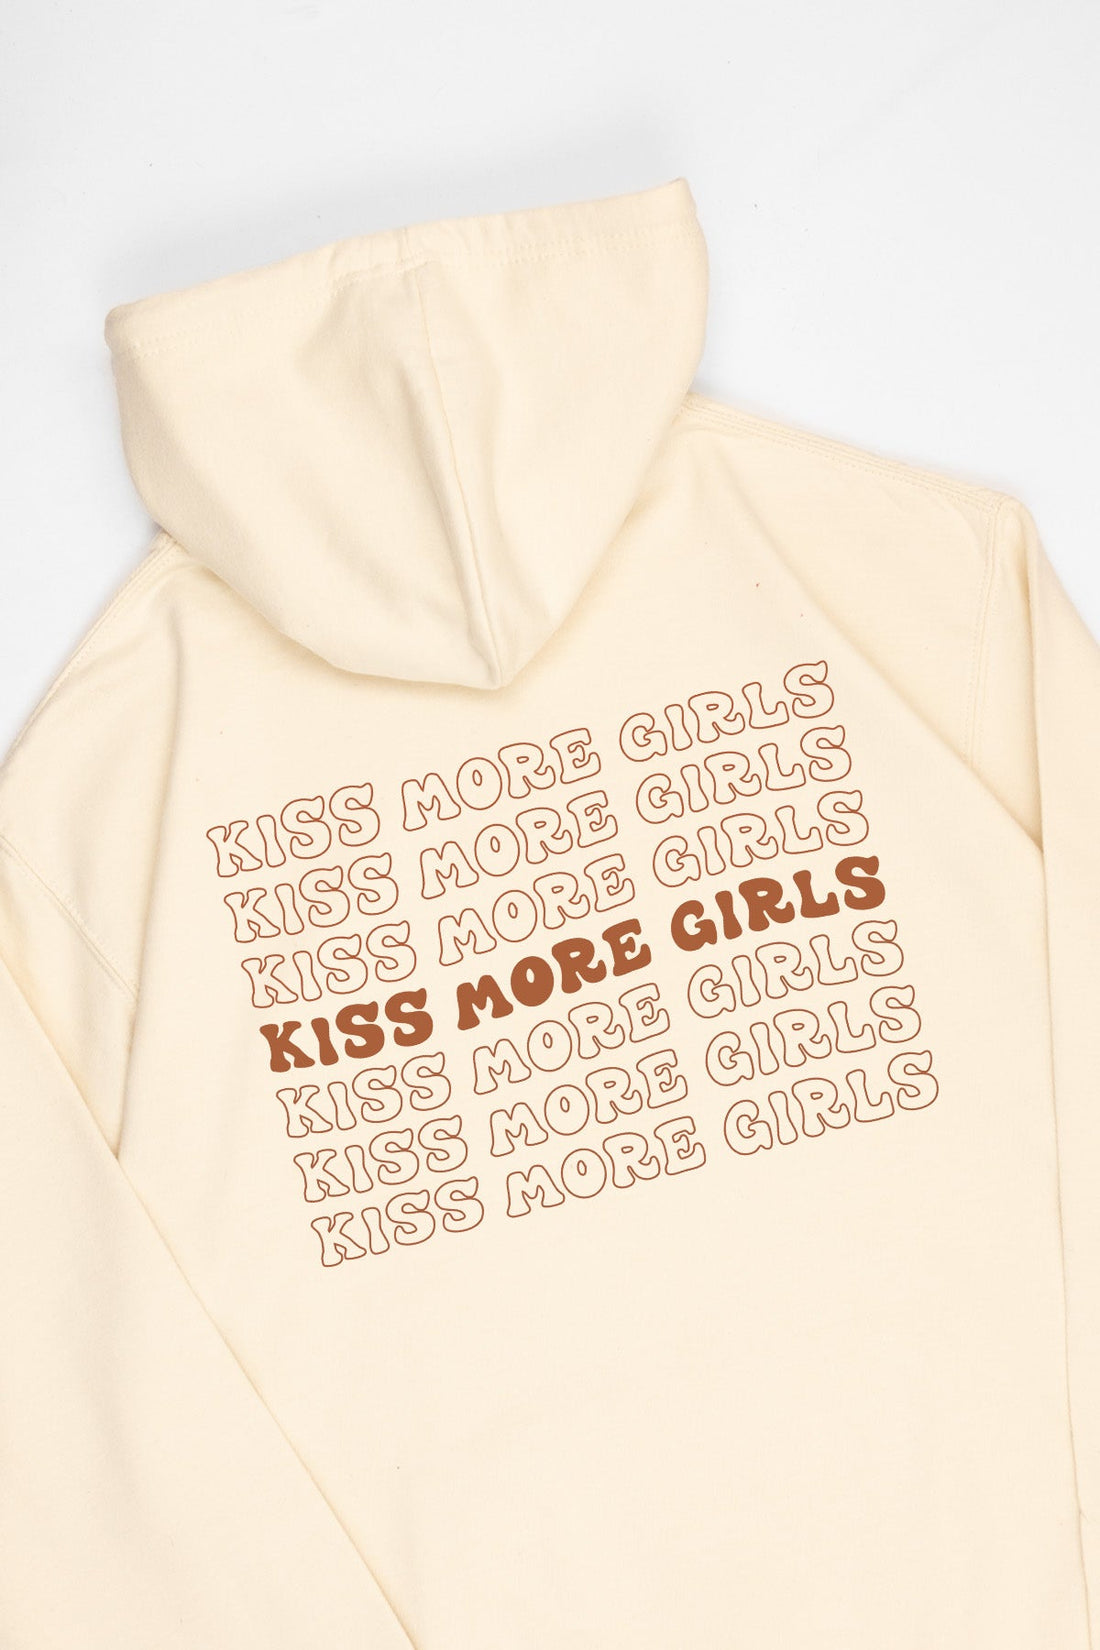 Kiss More Girls Hoodie